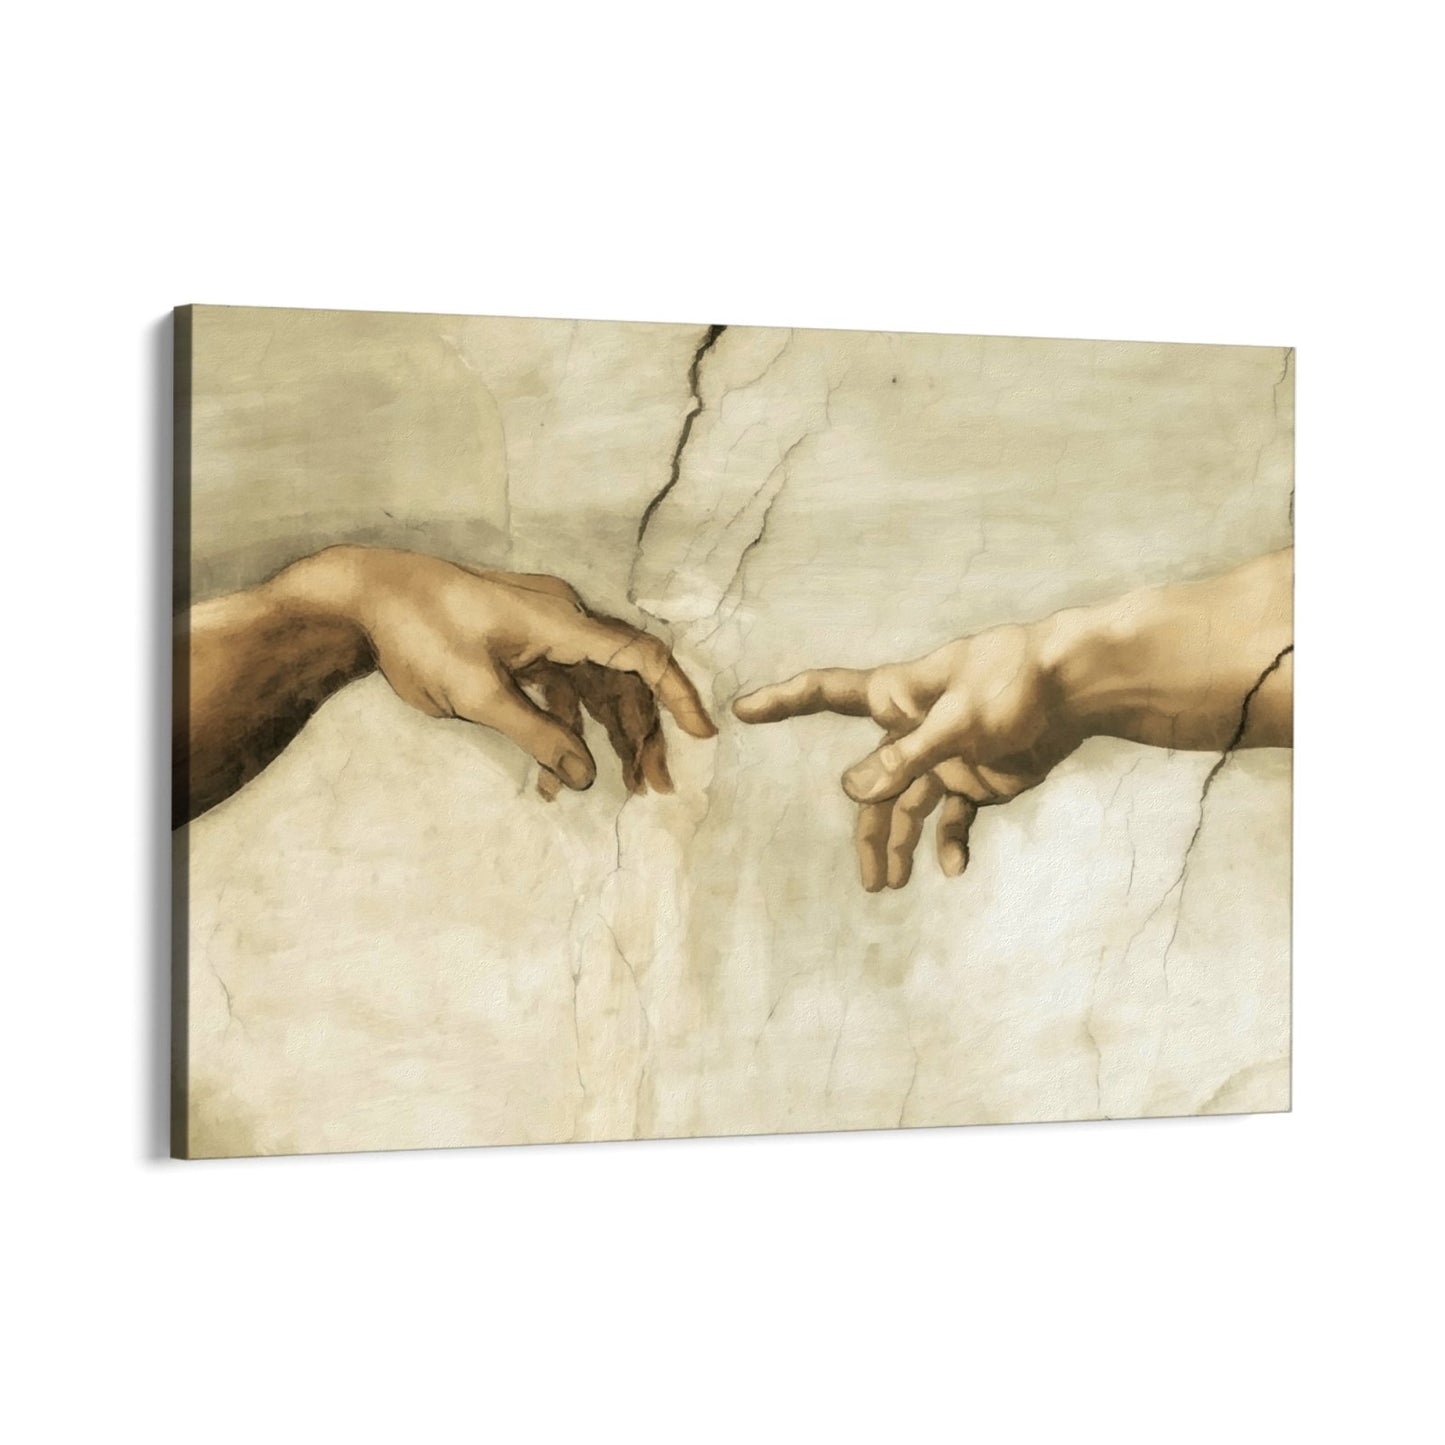 Michelangelo's handen